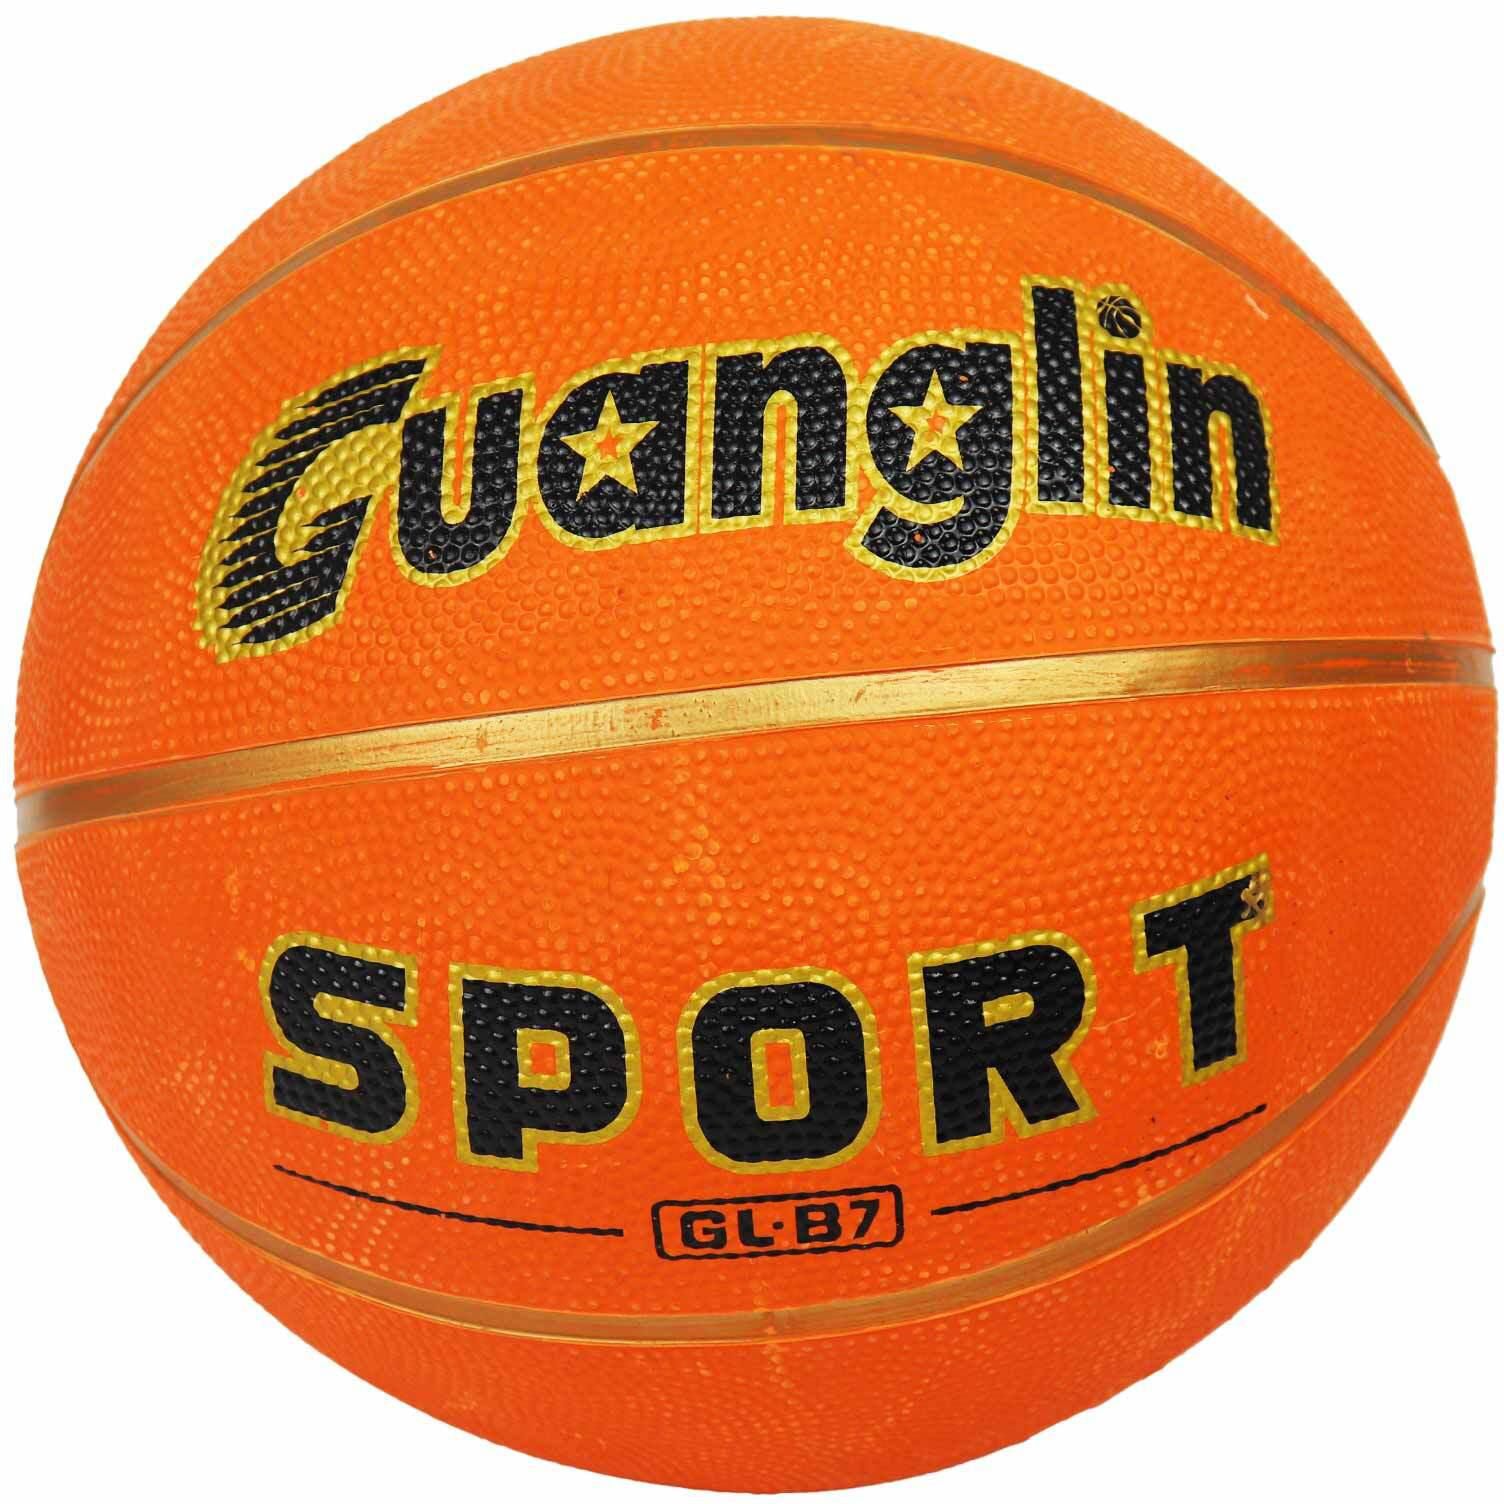 Basketball - 500 gram